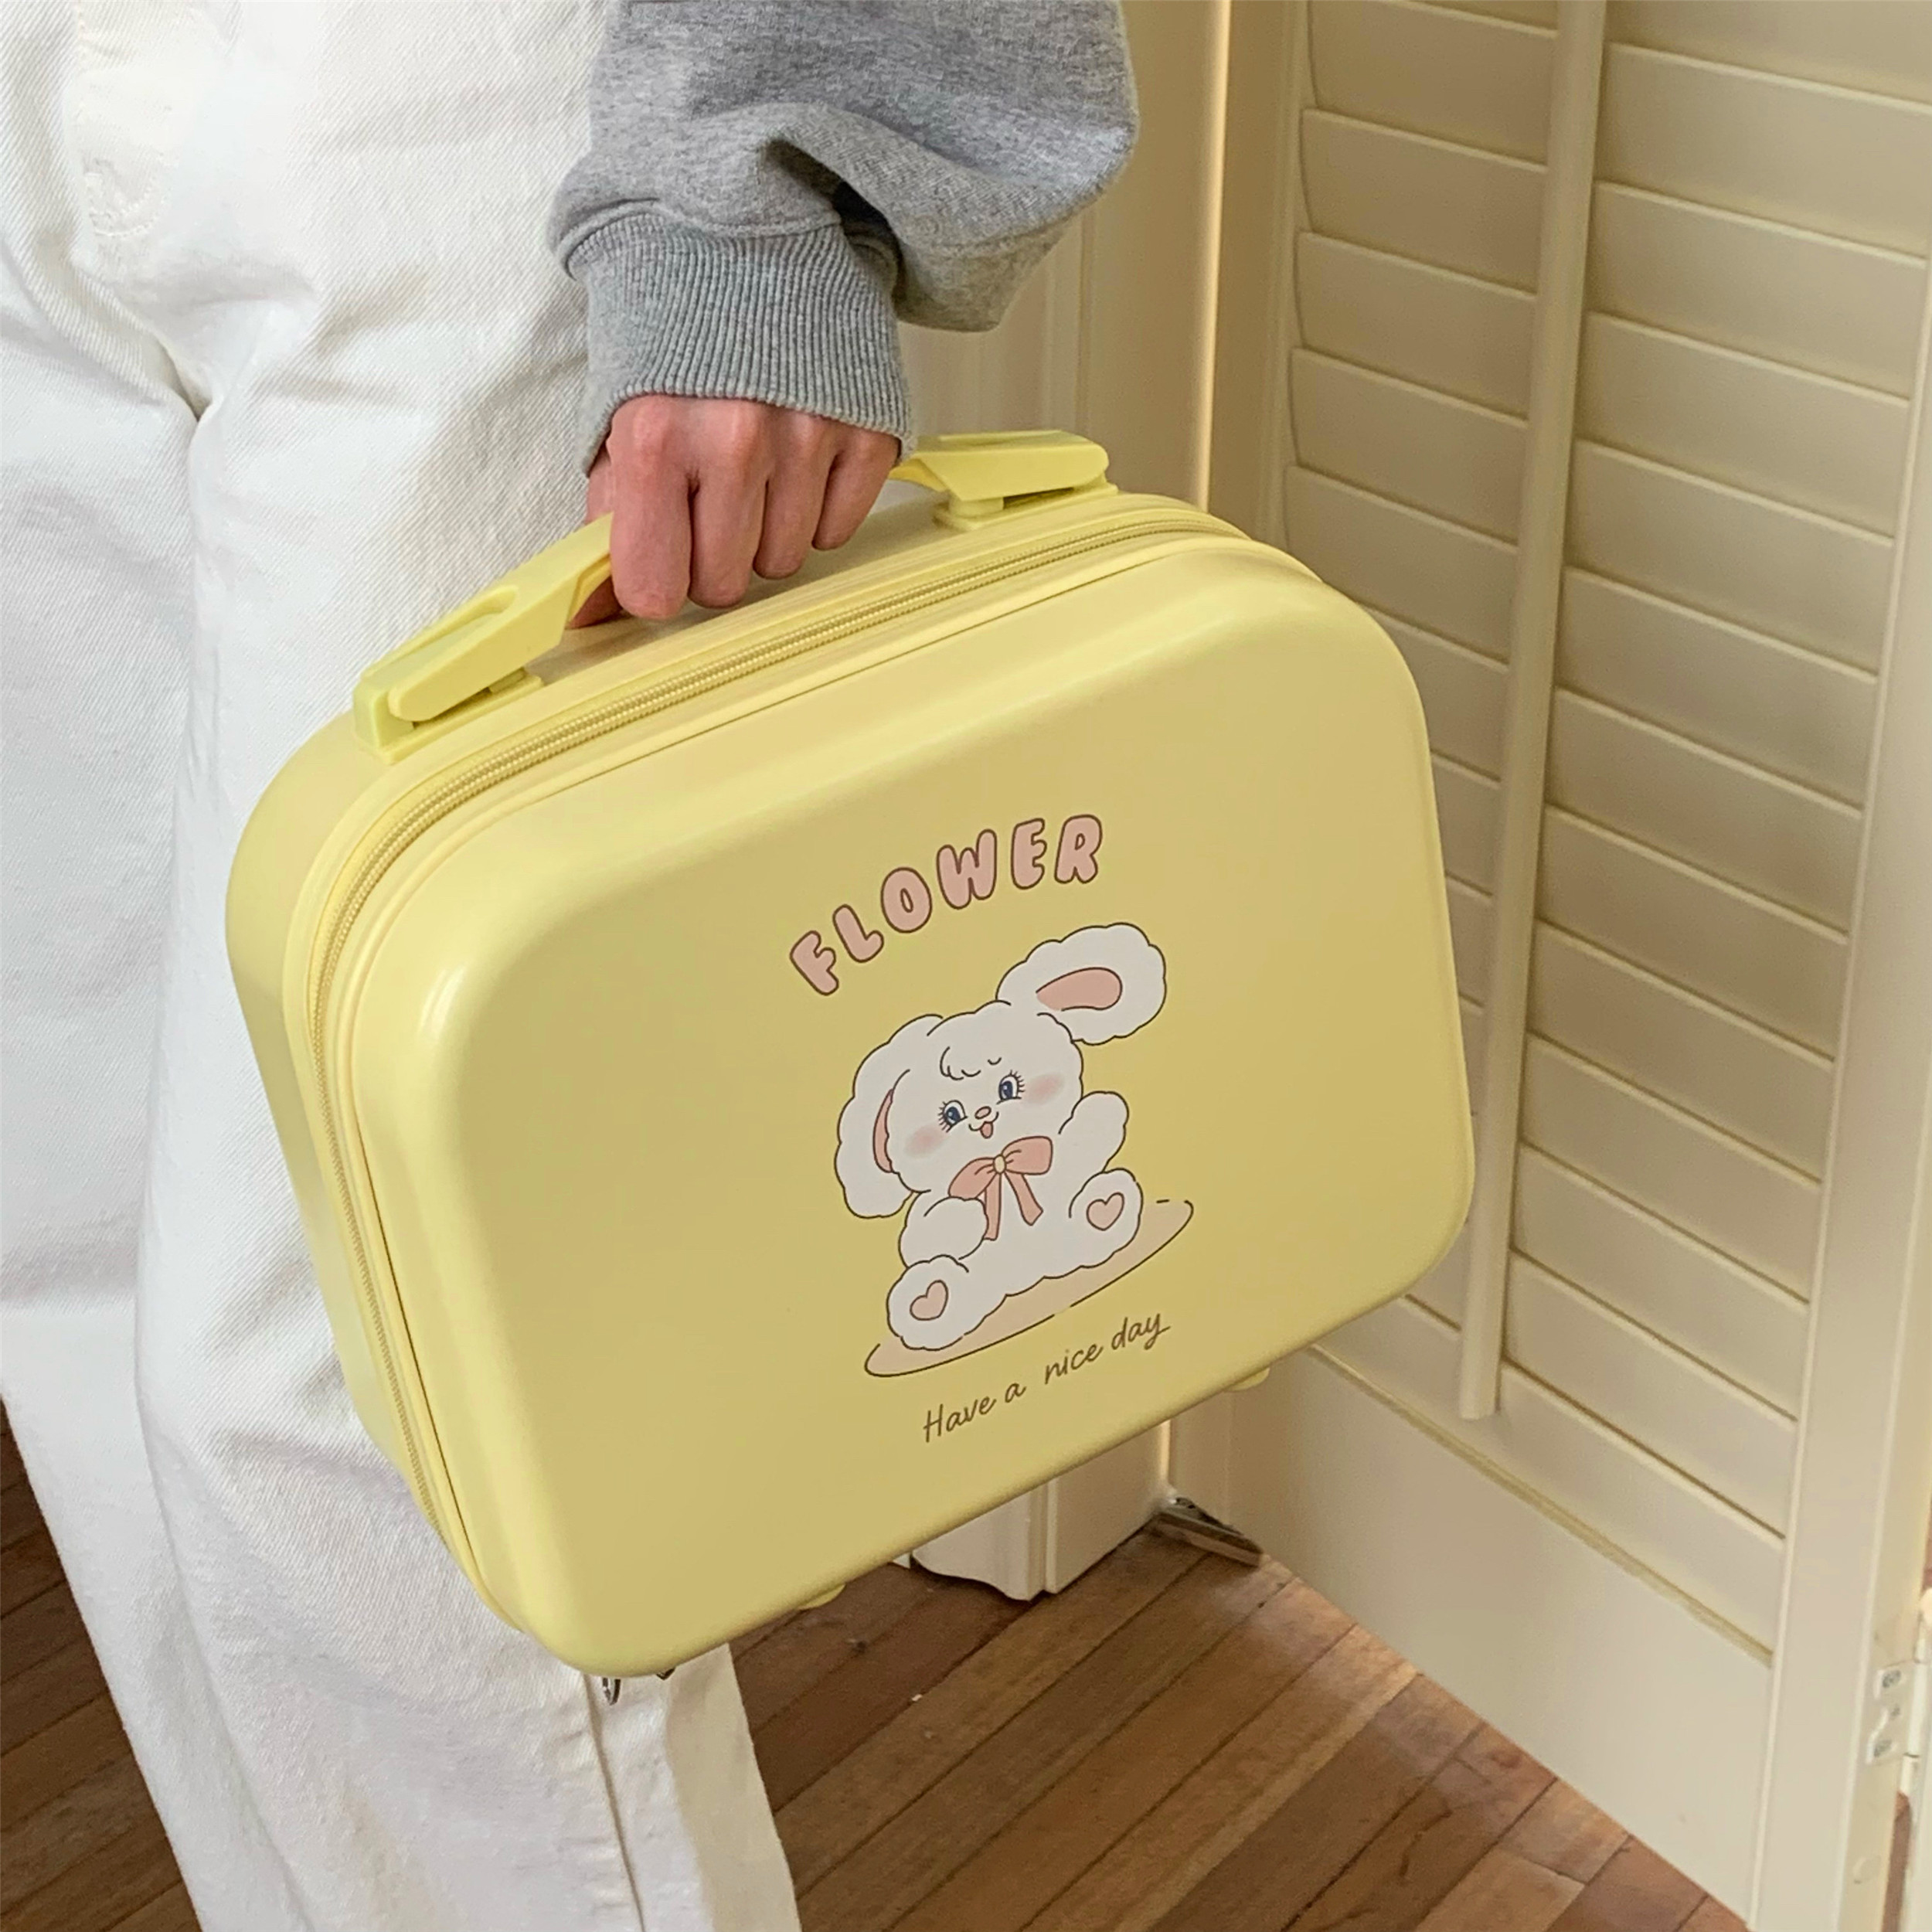 少女甜心粉色兔子旅行箱~14寸手提化妆箱便携大容量化妆包收纳箱